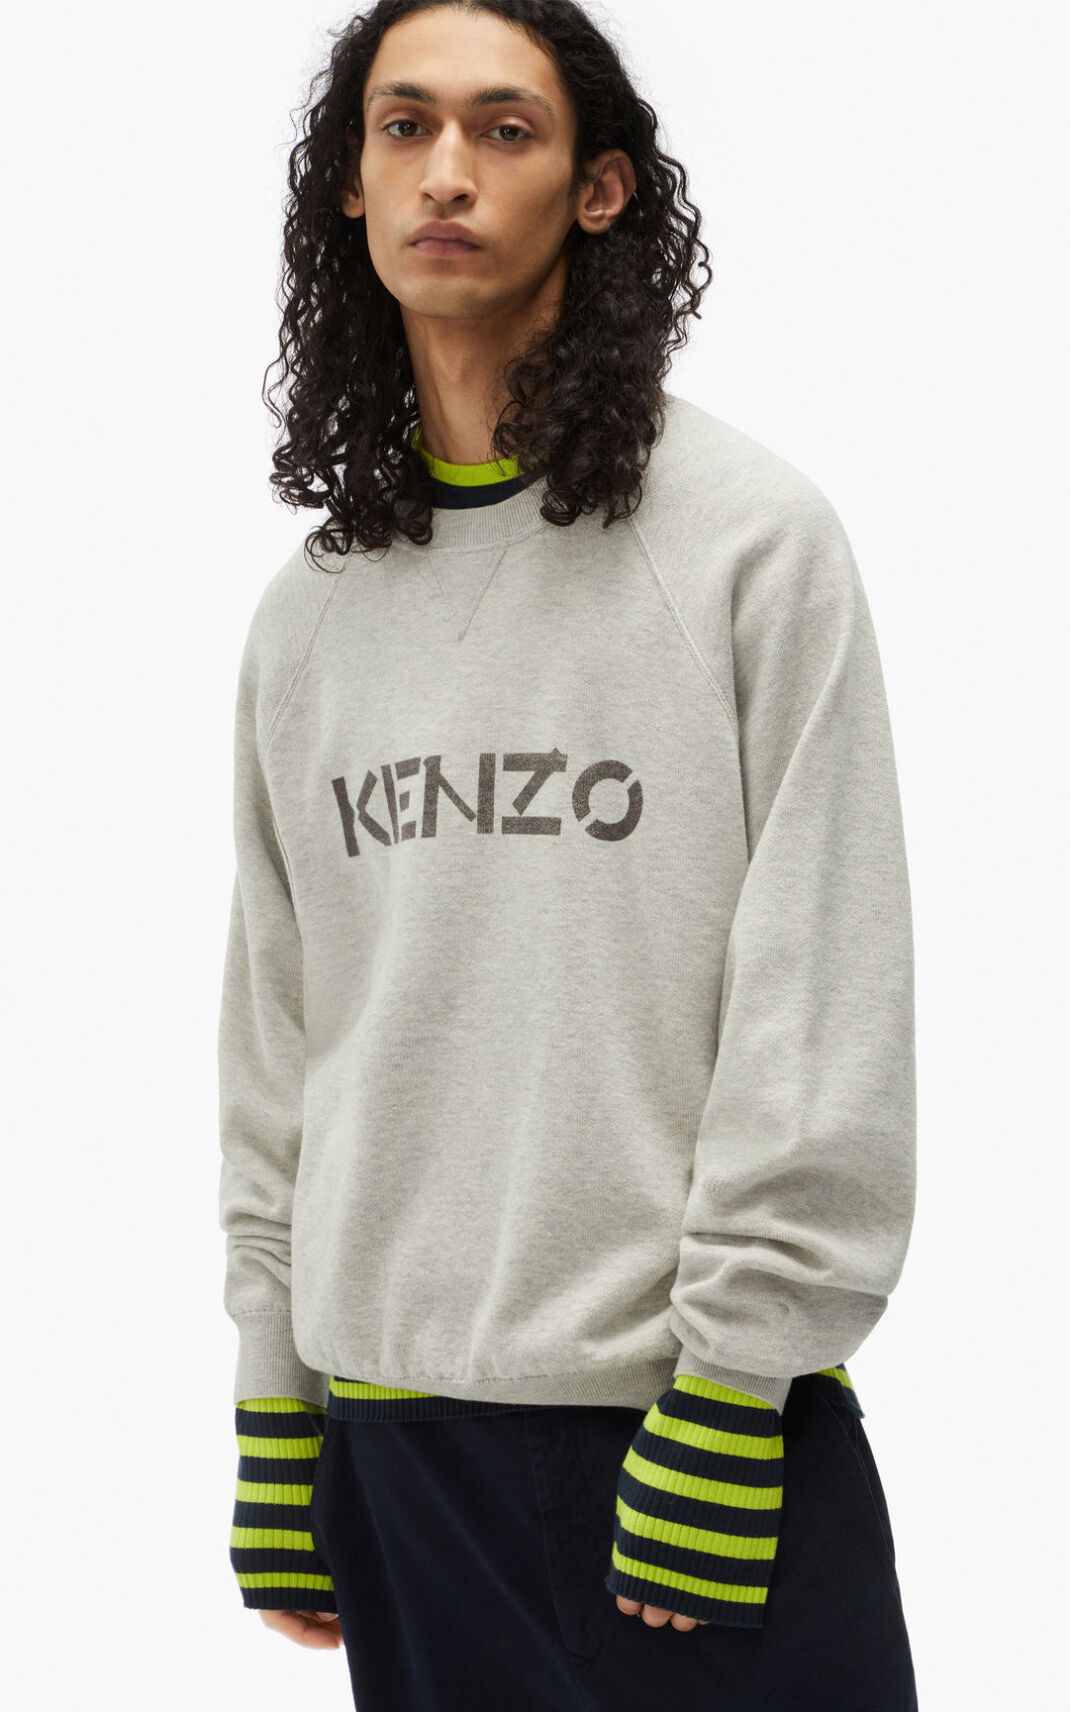 Kenzo logo Jumper Grey For Mens 6903IYZAD